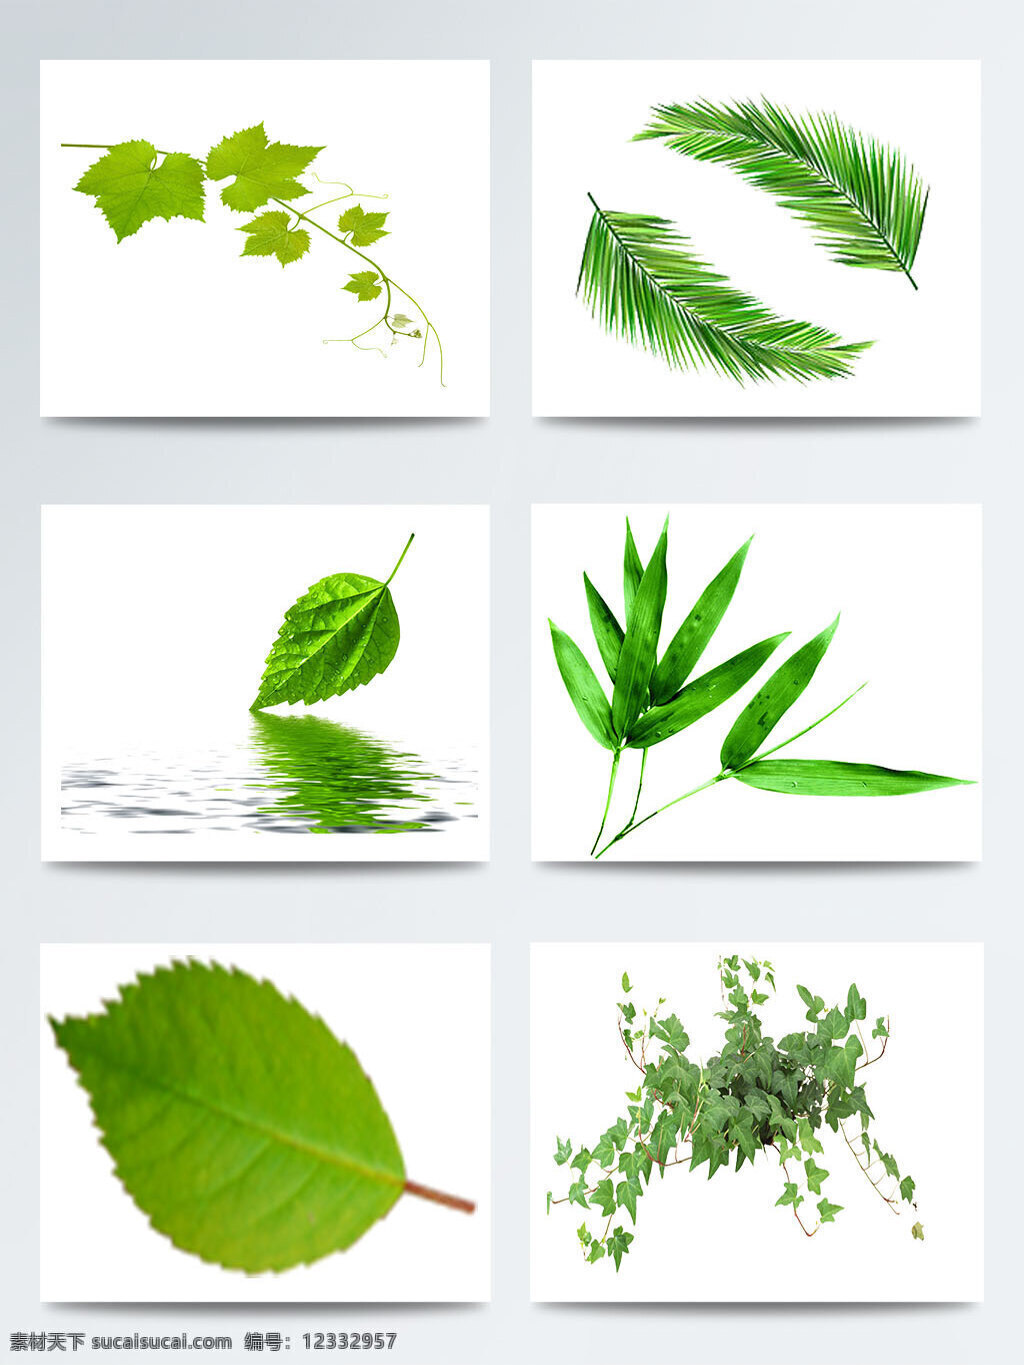 二十四节气 立春 叶子 图案 集合 传统 节气 立春节气 绿色叶子 树叶图案 叶子图案